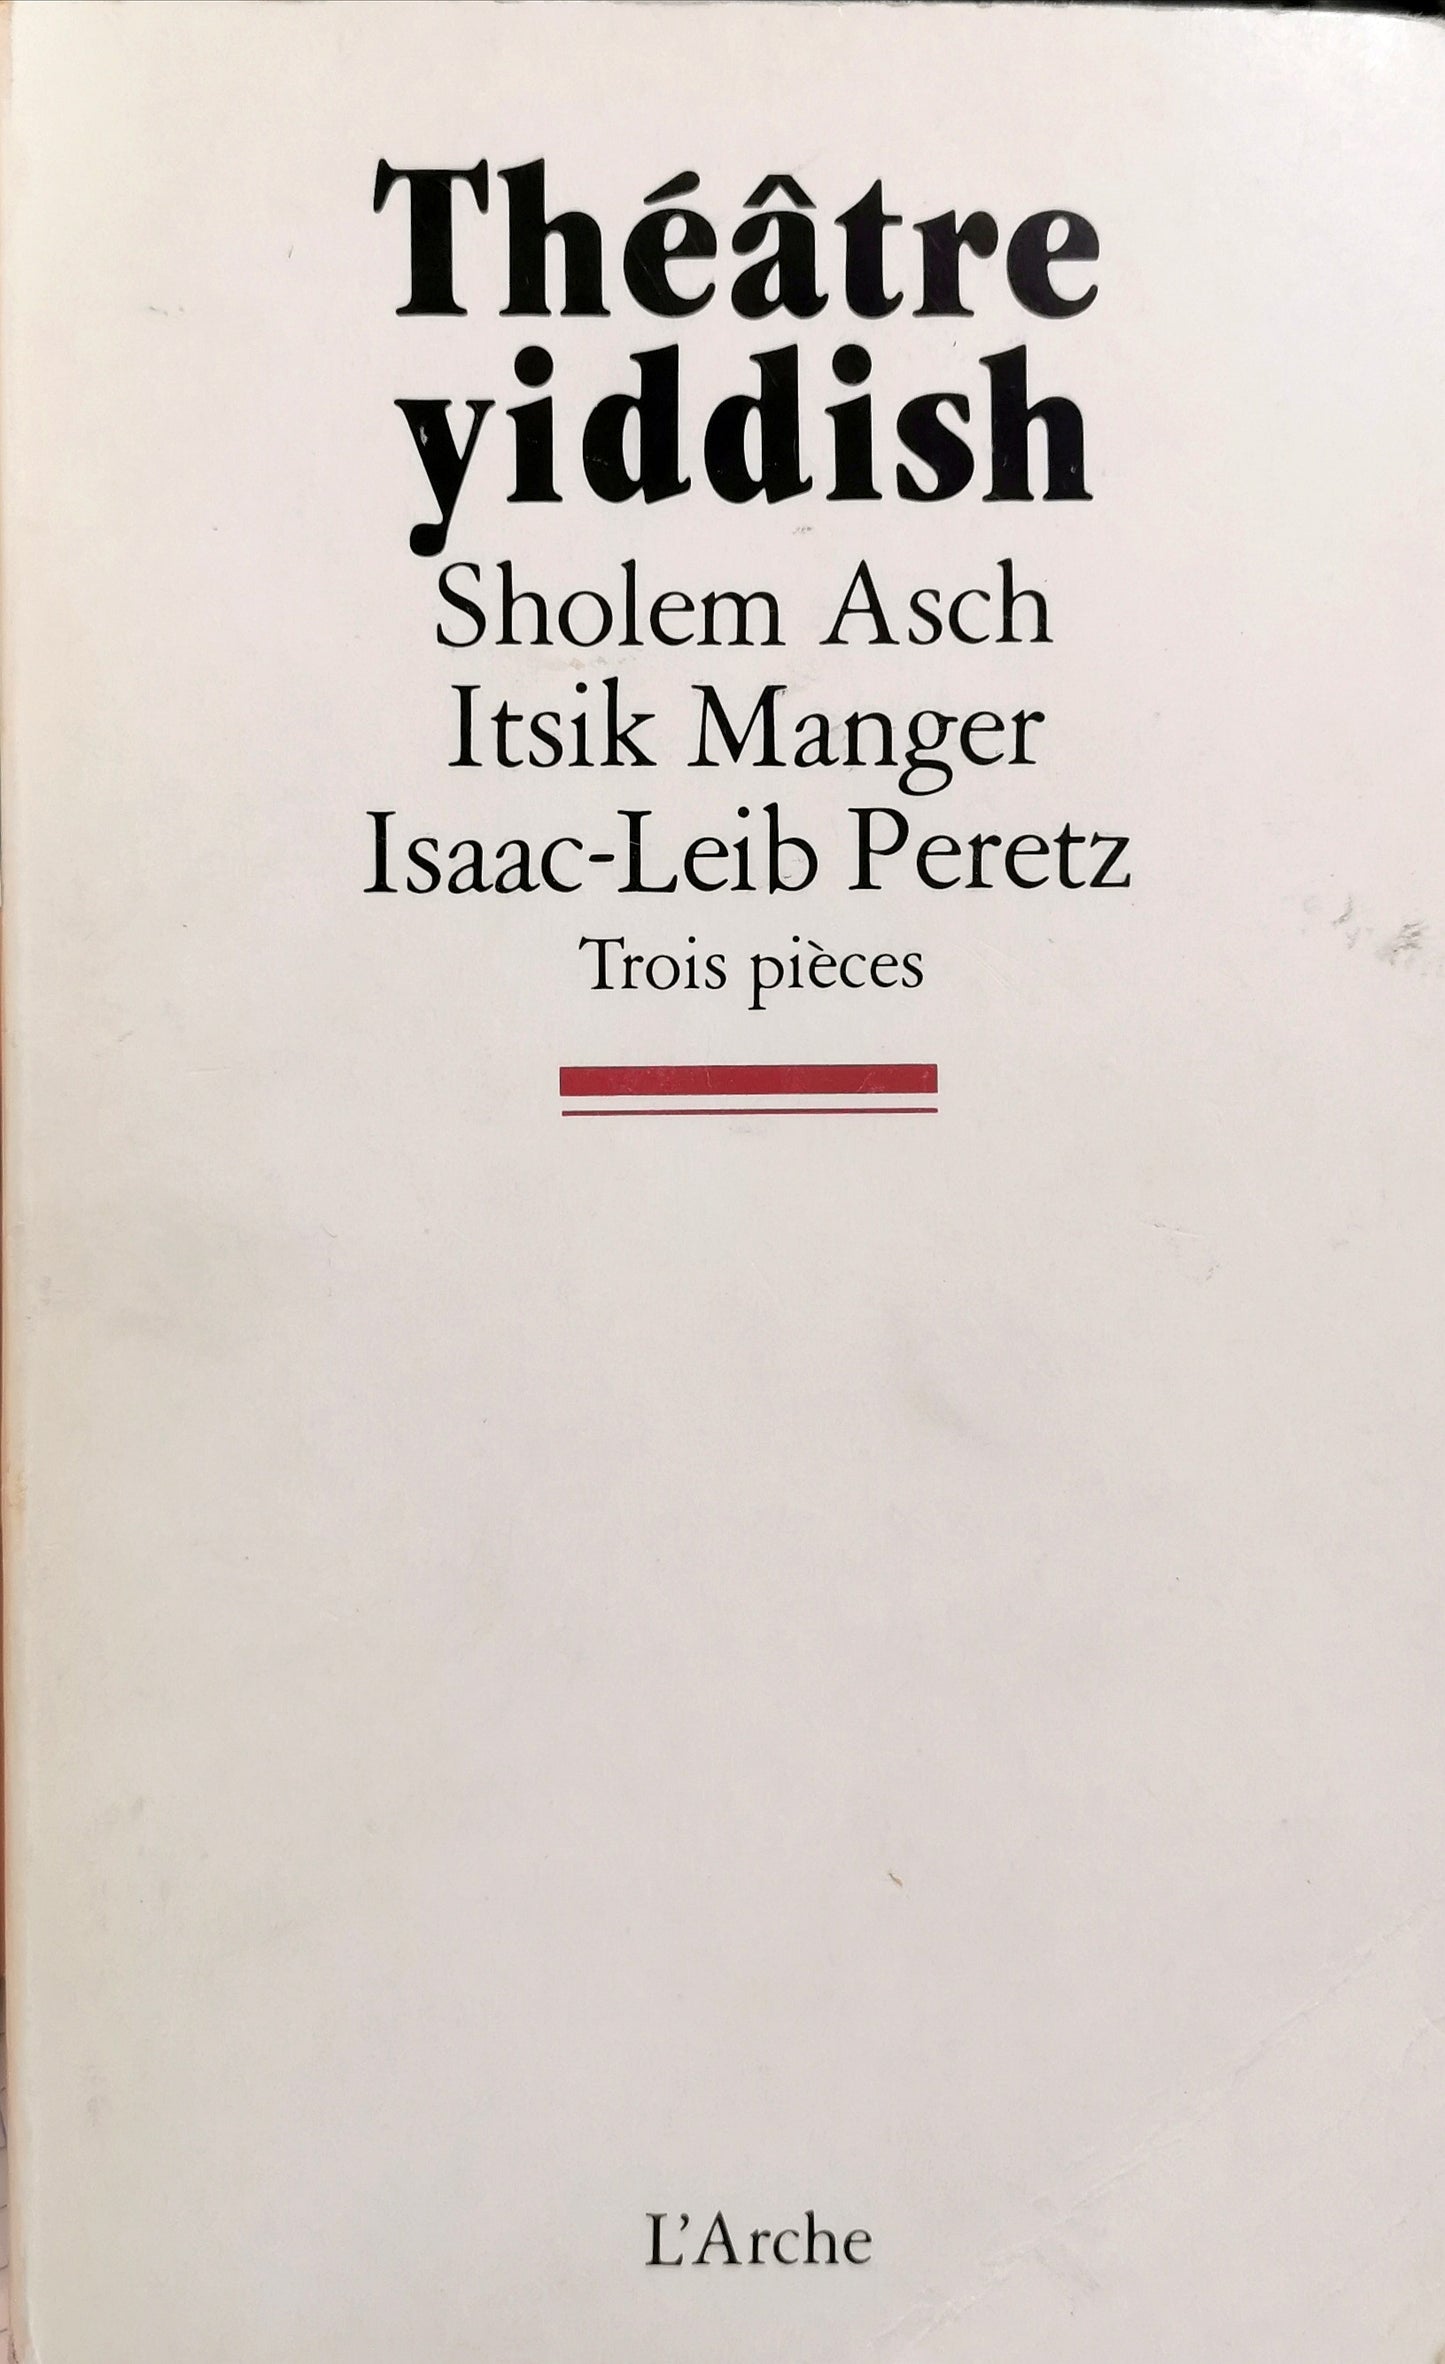 Théâtre yiddish, Sholem Asch, Itsik Manger, Isaac-Leib Peretz, Trois pièces, postface Aristide Demonico, L'Arche, 1989.